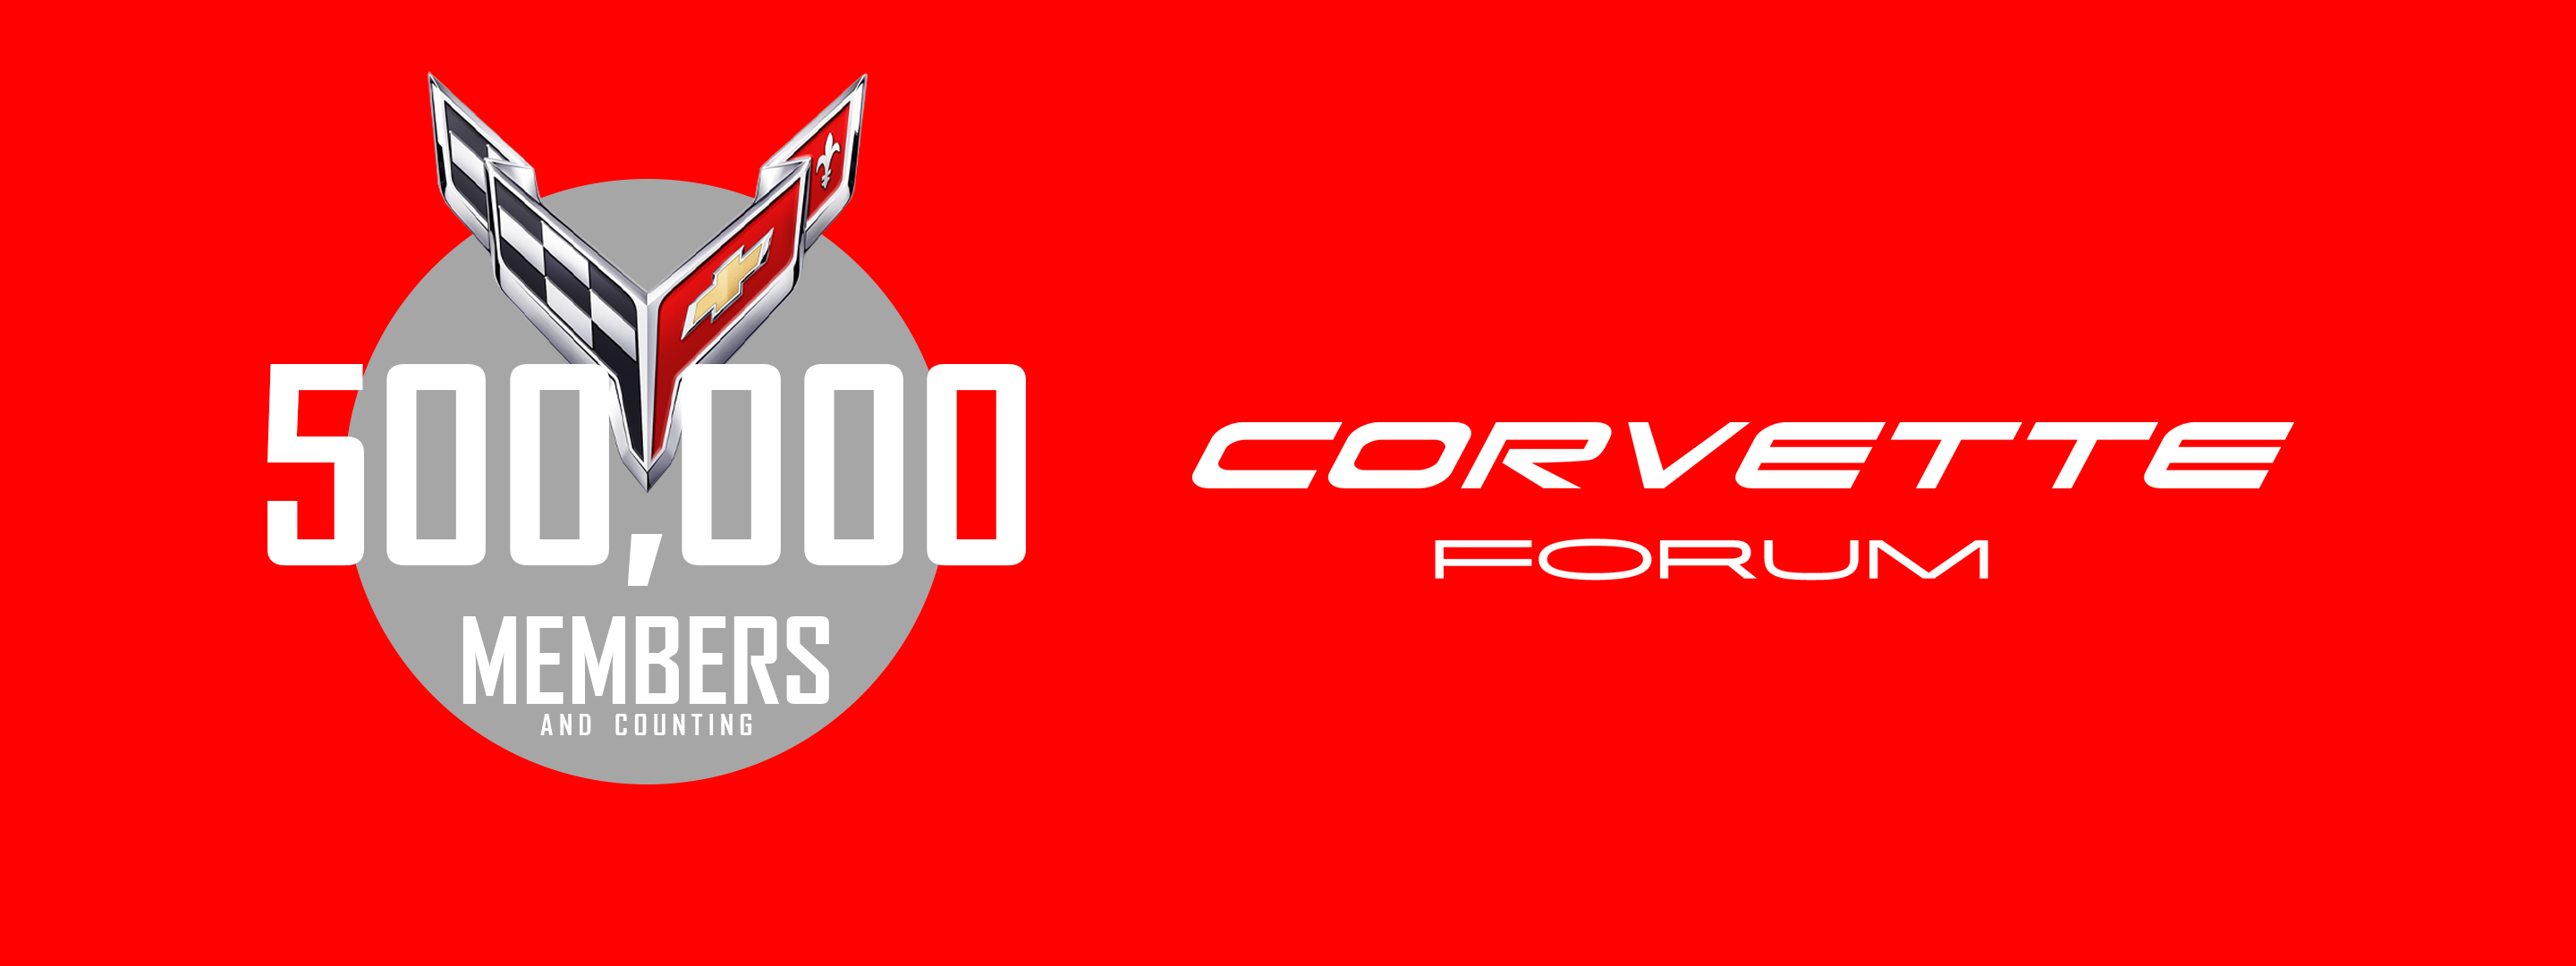 CorvetteForum 500K red wide